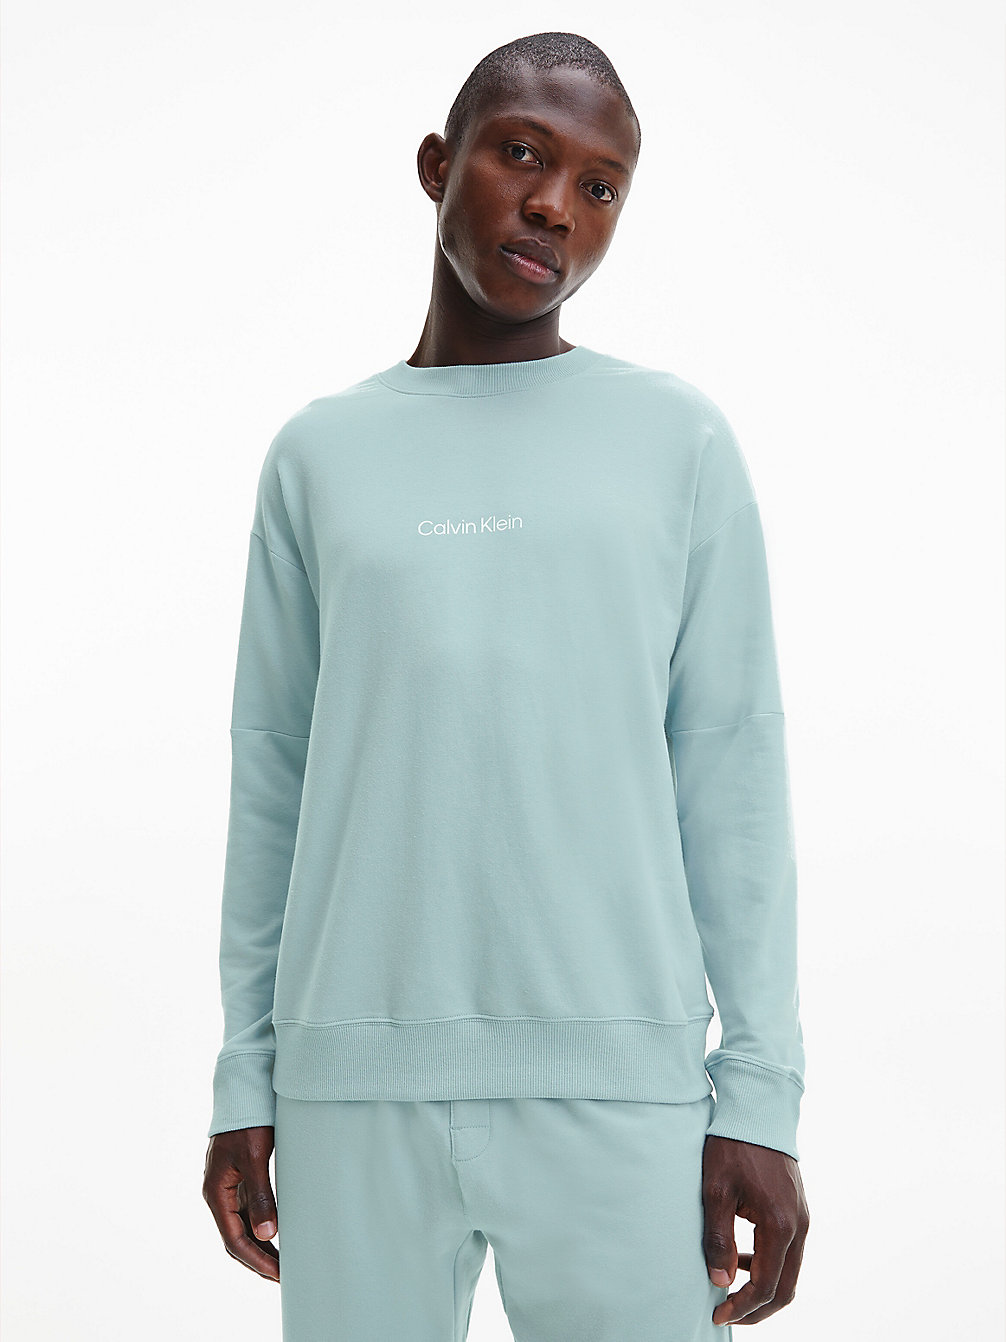 TOURMALINE Lounge Sweatshirt - Modern Structure undefined men Calvin Klein